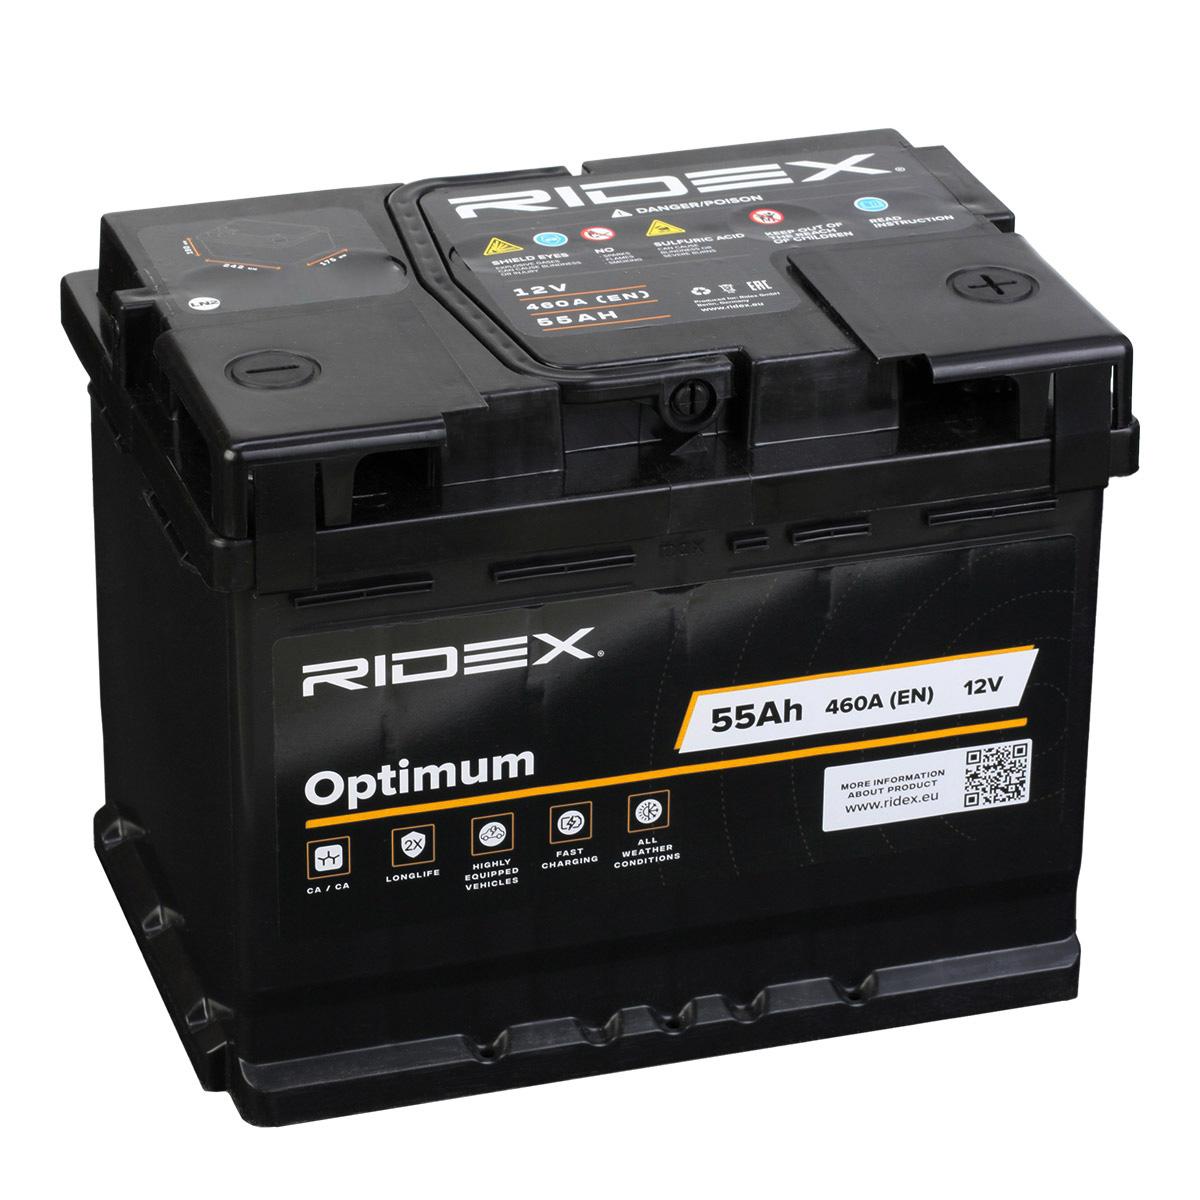 Bateria RIDEX 460A, 55Ah, Bateria chumbo-ácido 1S0104